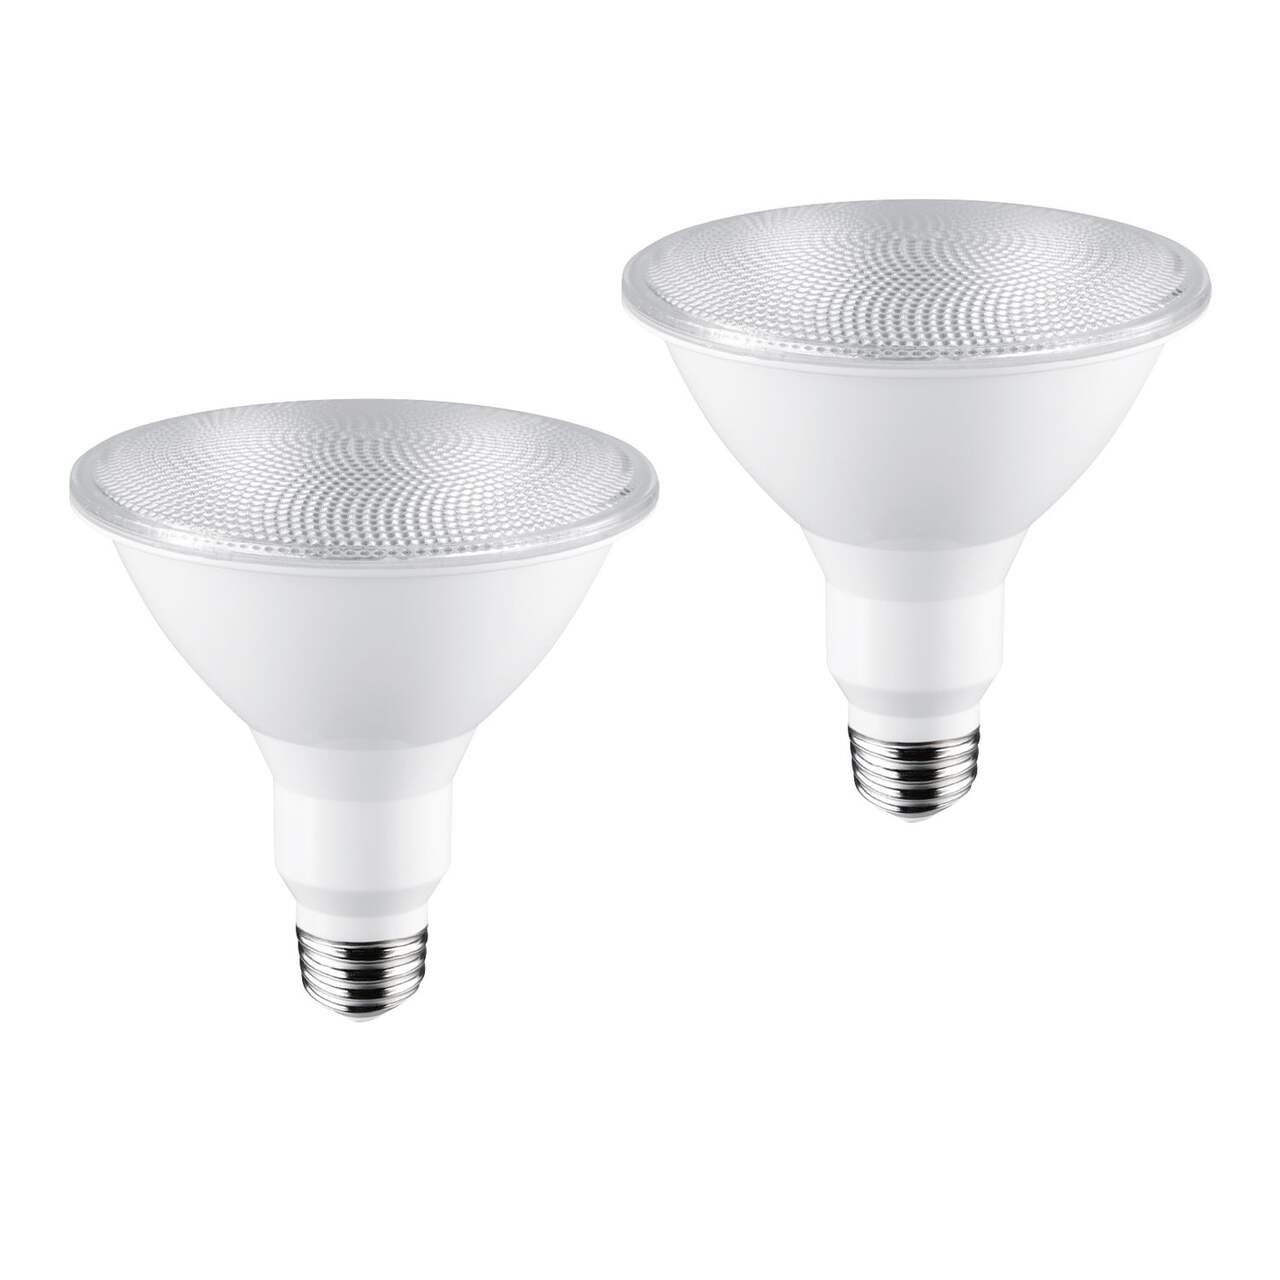 Everyday Essentials LED Bulb 100W A19 10Y 5000K - 1 ea